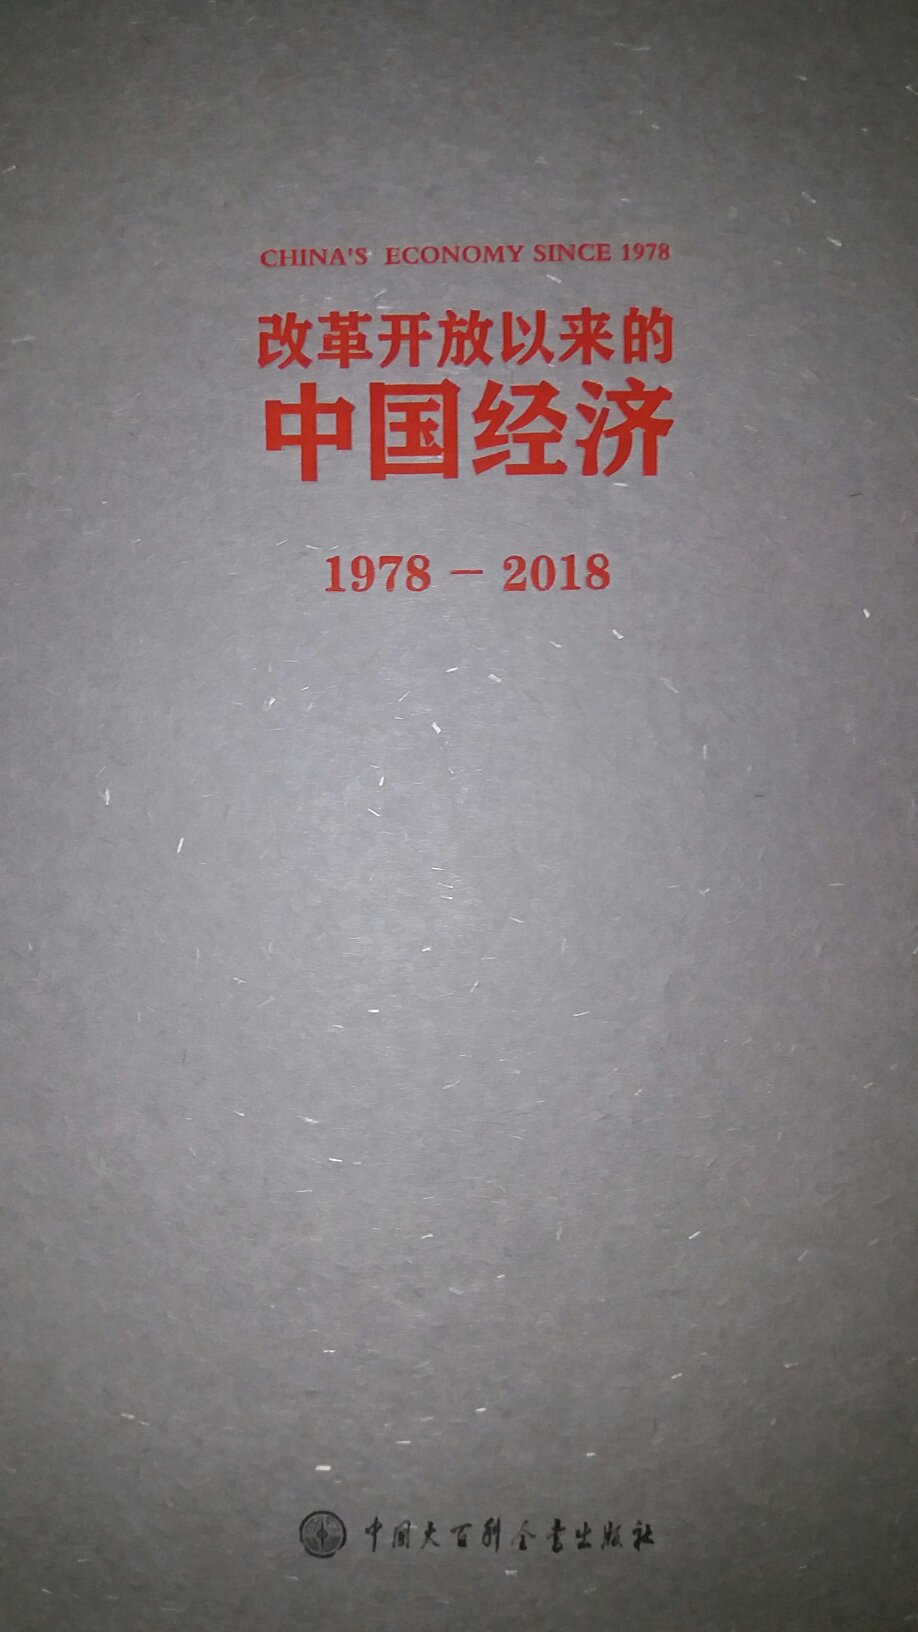 本书融汇厉老近几十年的研究心血，详实记录**开放以来很多重要的研究成果以及独到的见解，也是中国经济发展史阶段性总结，只是兴趣爱好和个人信仰。